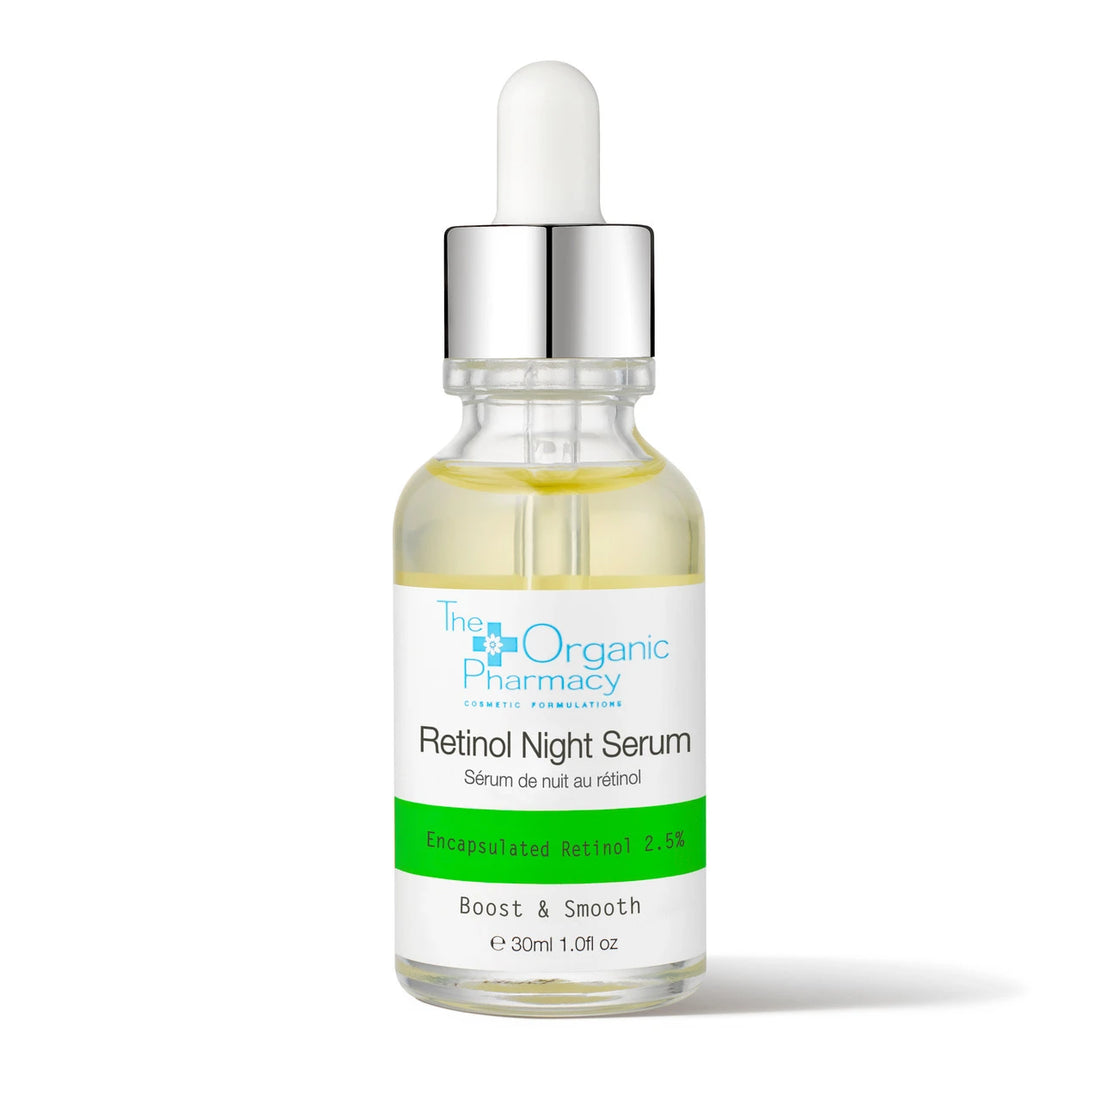 The Organic Pharmacy Retinol Night Serum 2.5% 30ml